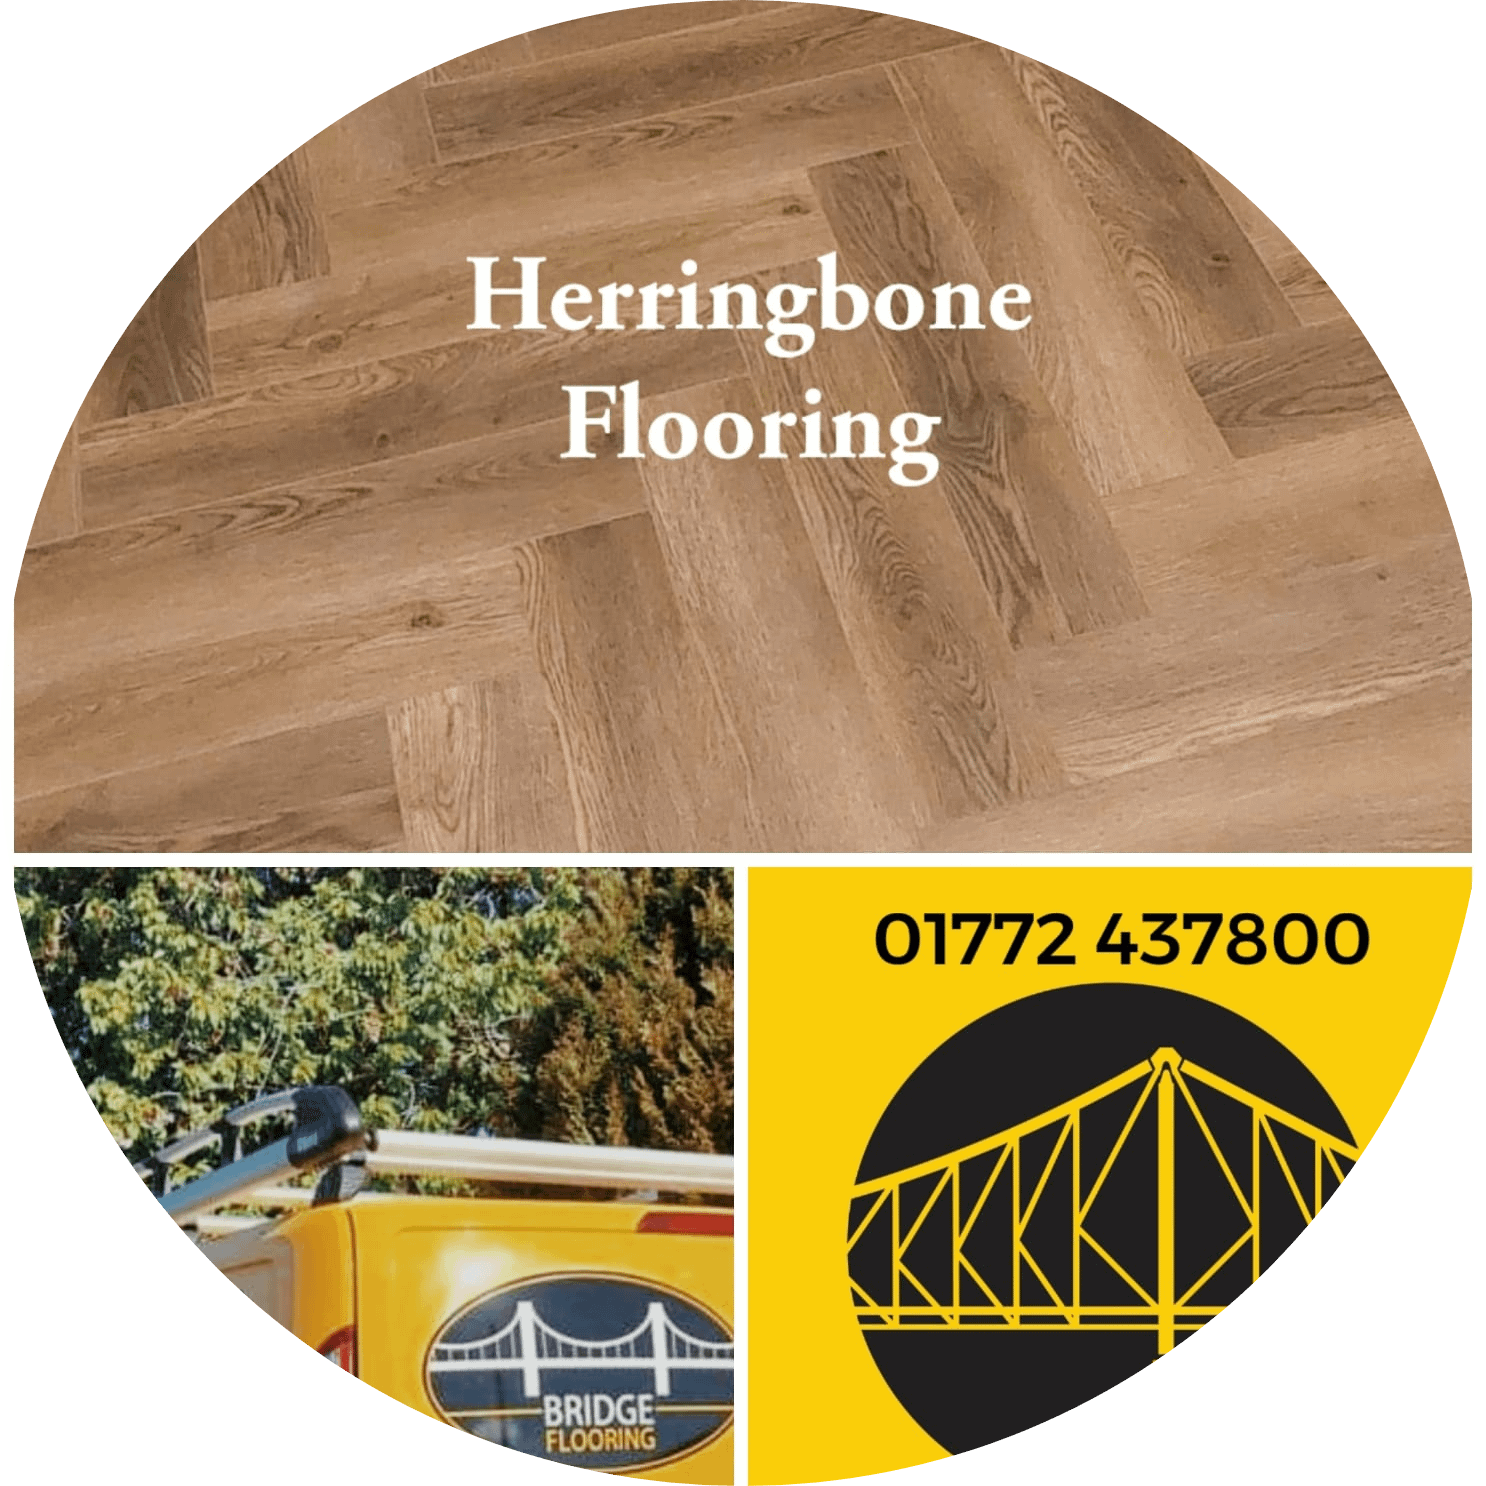 herringbone flooring by Bridge Flooring 01772 437800